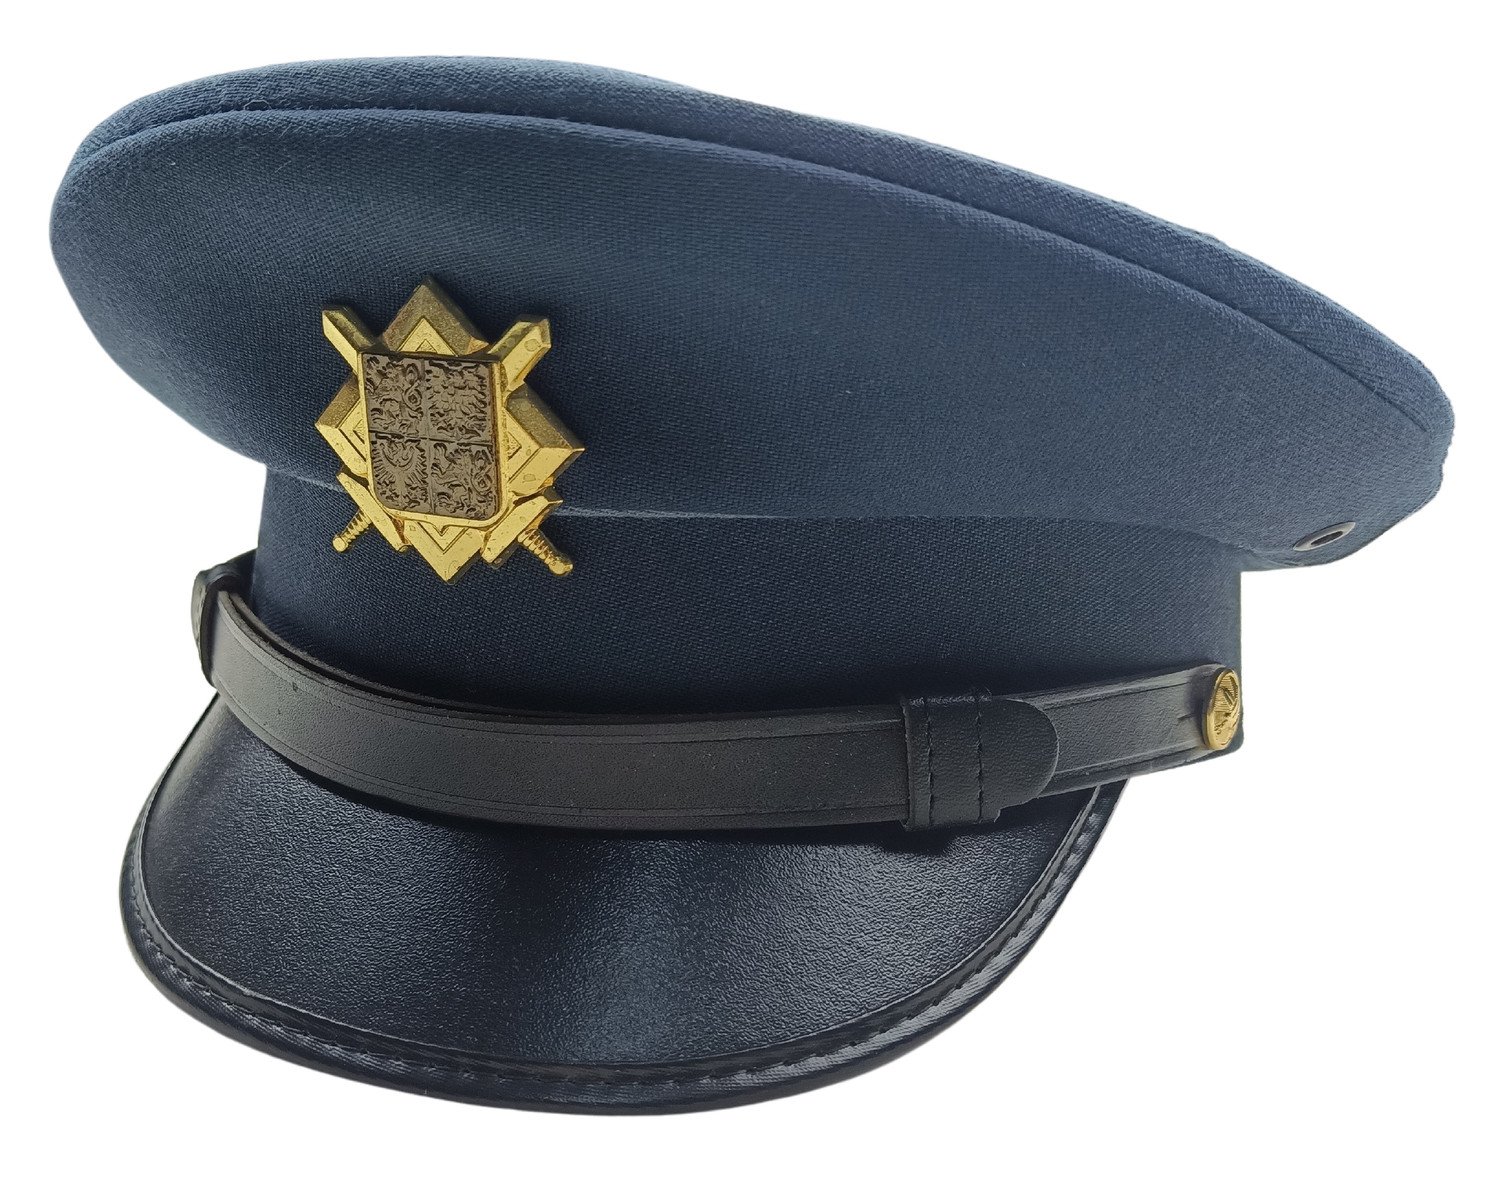 Brigadýrka služební s odznakem AČR modrá vz.97 vzdušné síly originál Velikost: 56